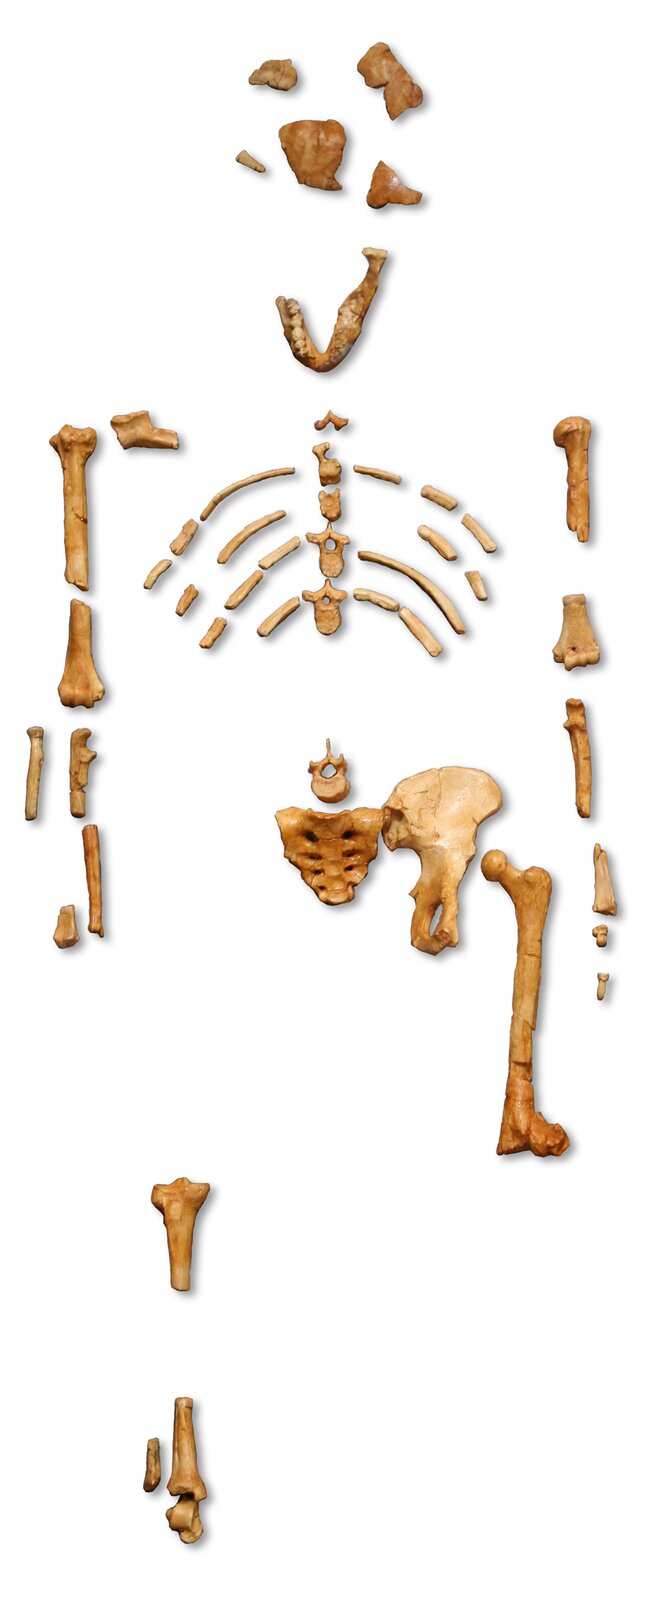 Na zdjęciu znajduje się szkielet Lucy z Muzeum Historii Naturalnej w Paryżu. Składają się na niego fragmenty kości czaszki i żuchwy, fragmenty kości kręgosłupa, kości miednicy, żeber, a także kończyn górnych i dolnych. 